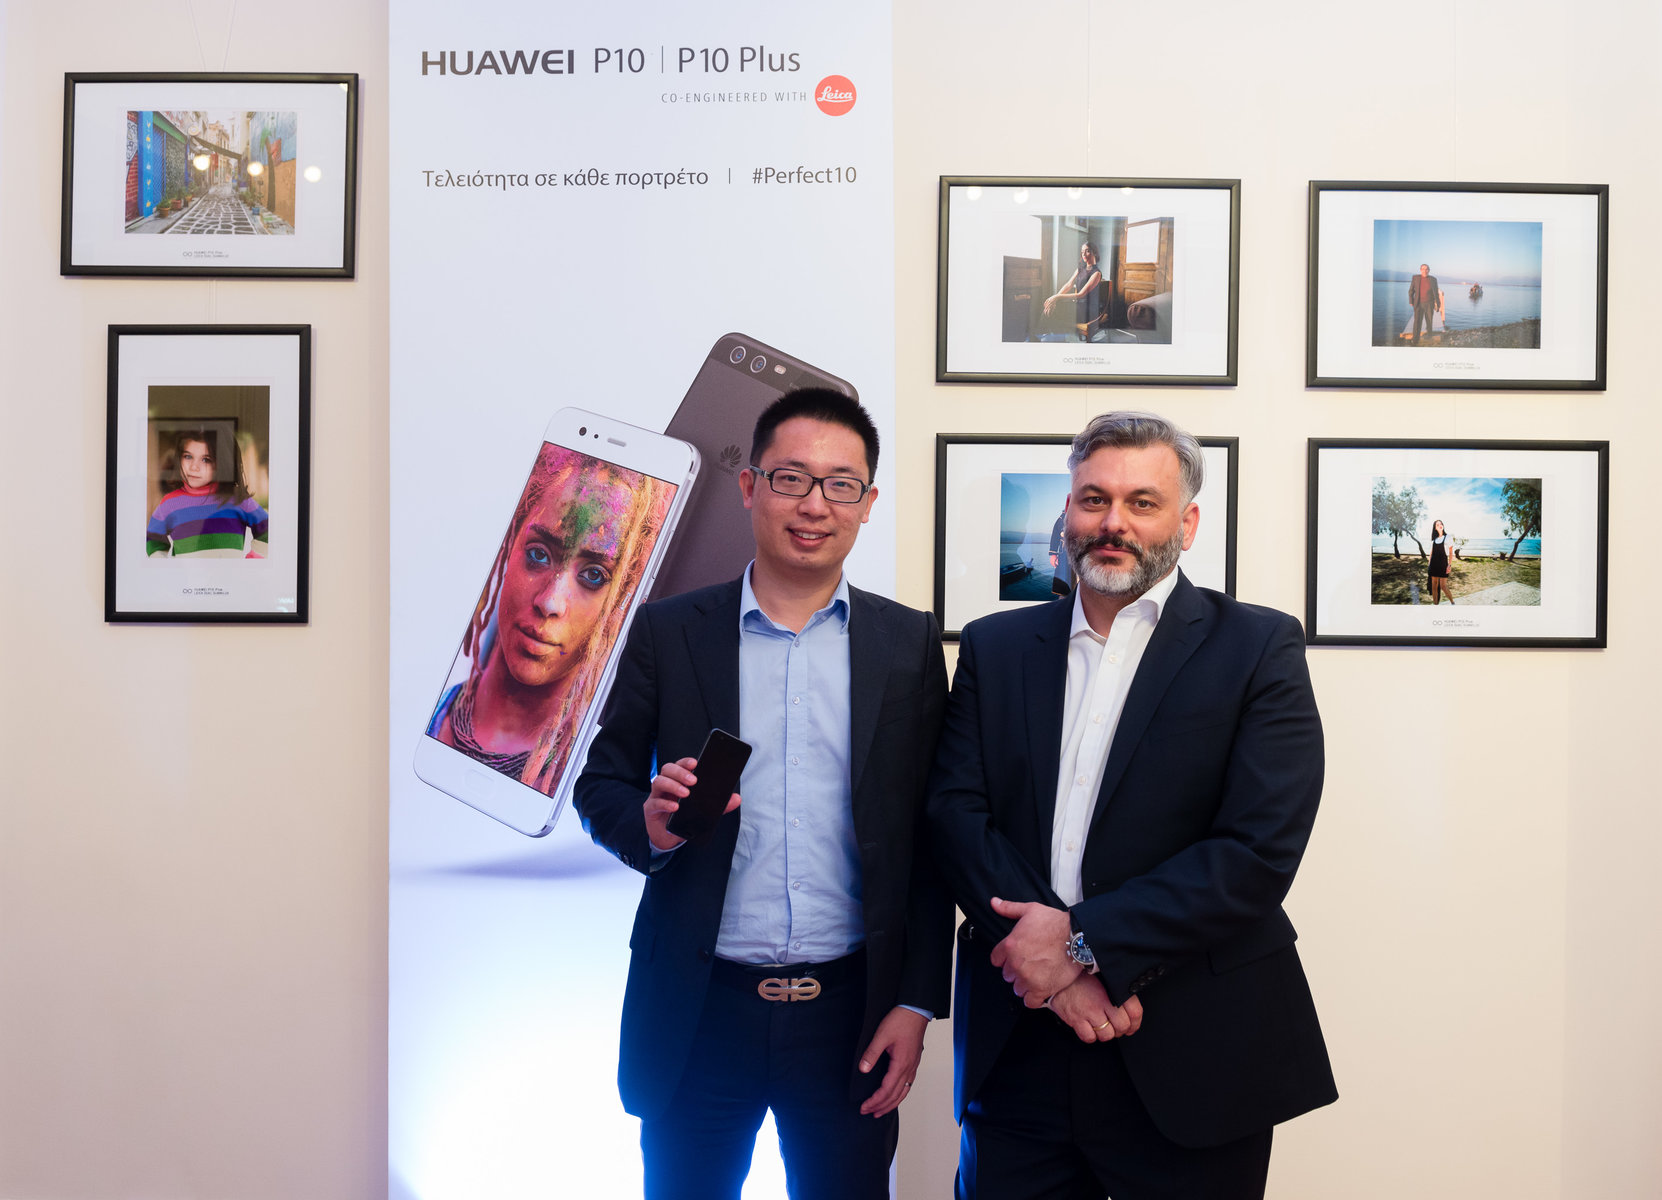 Εντυπωσιακή παρουσίαση για τα νέα smartphones Huawei P10 & P10 Plus!